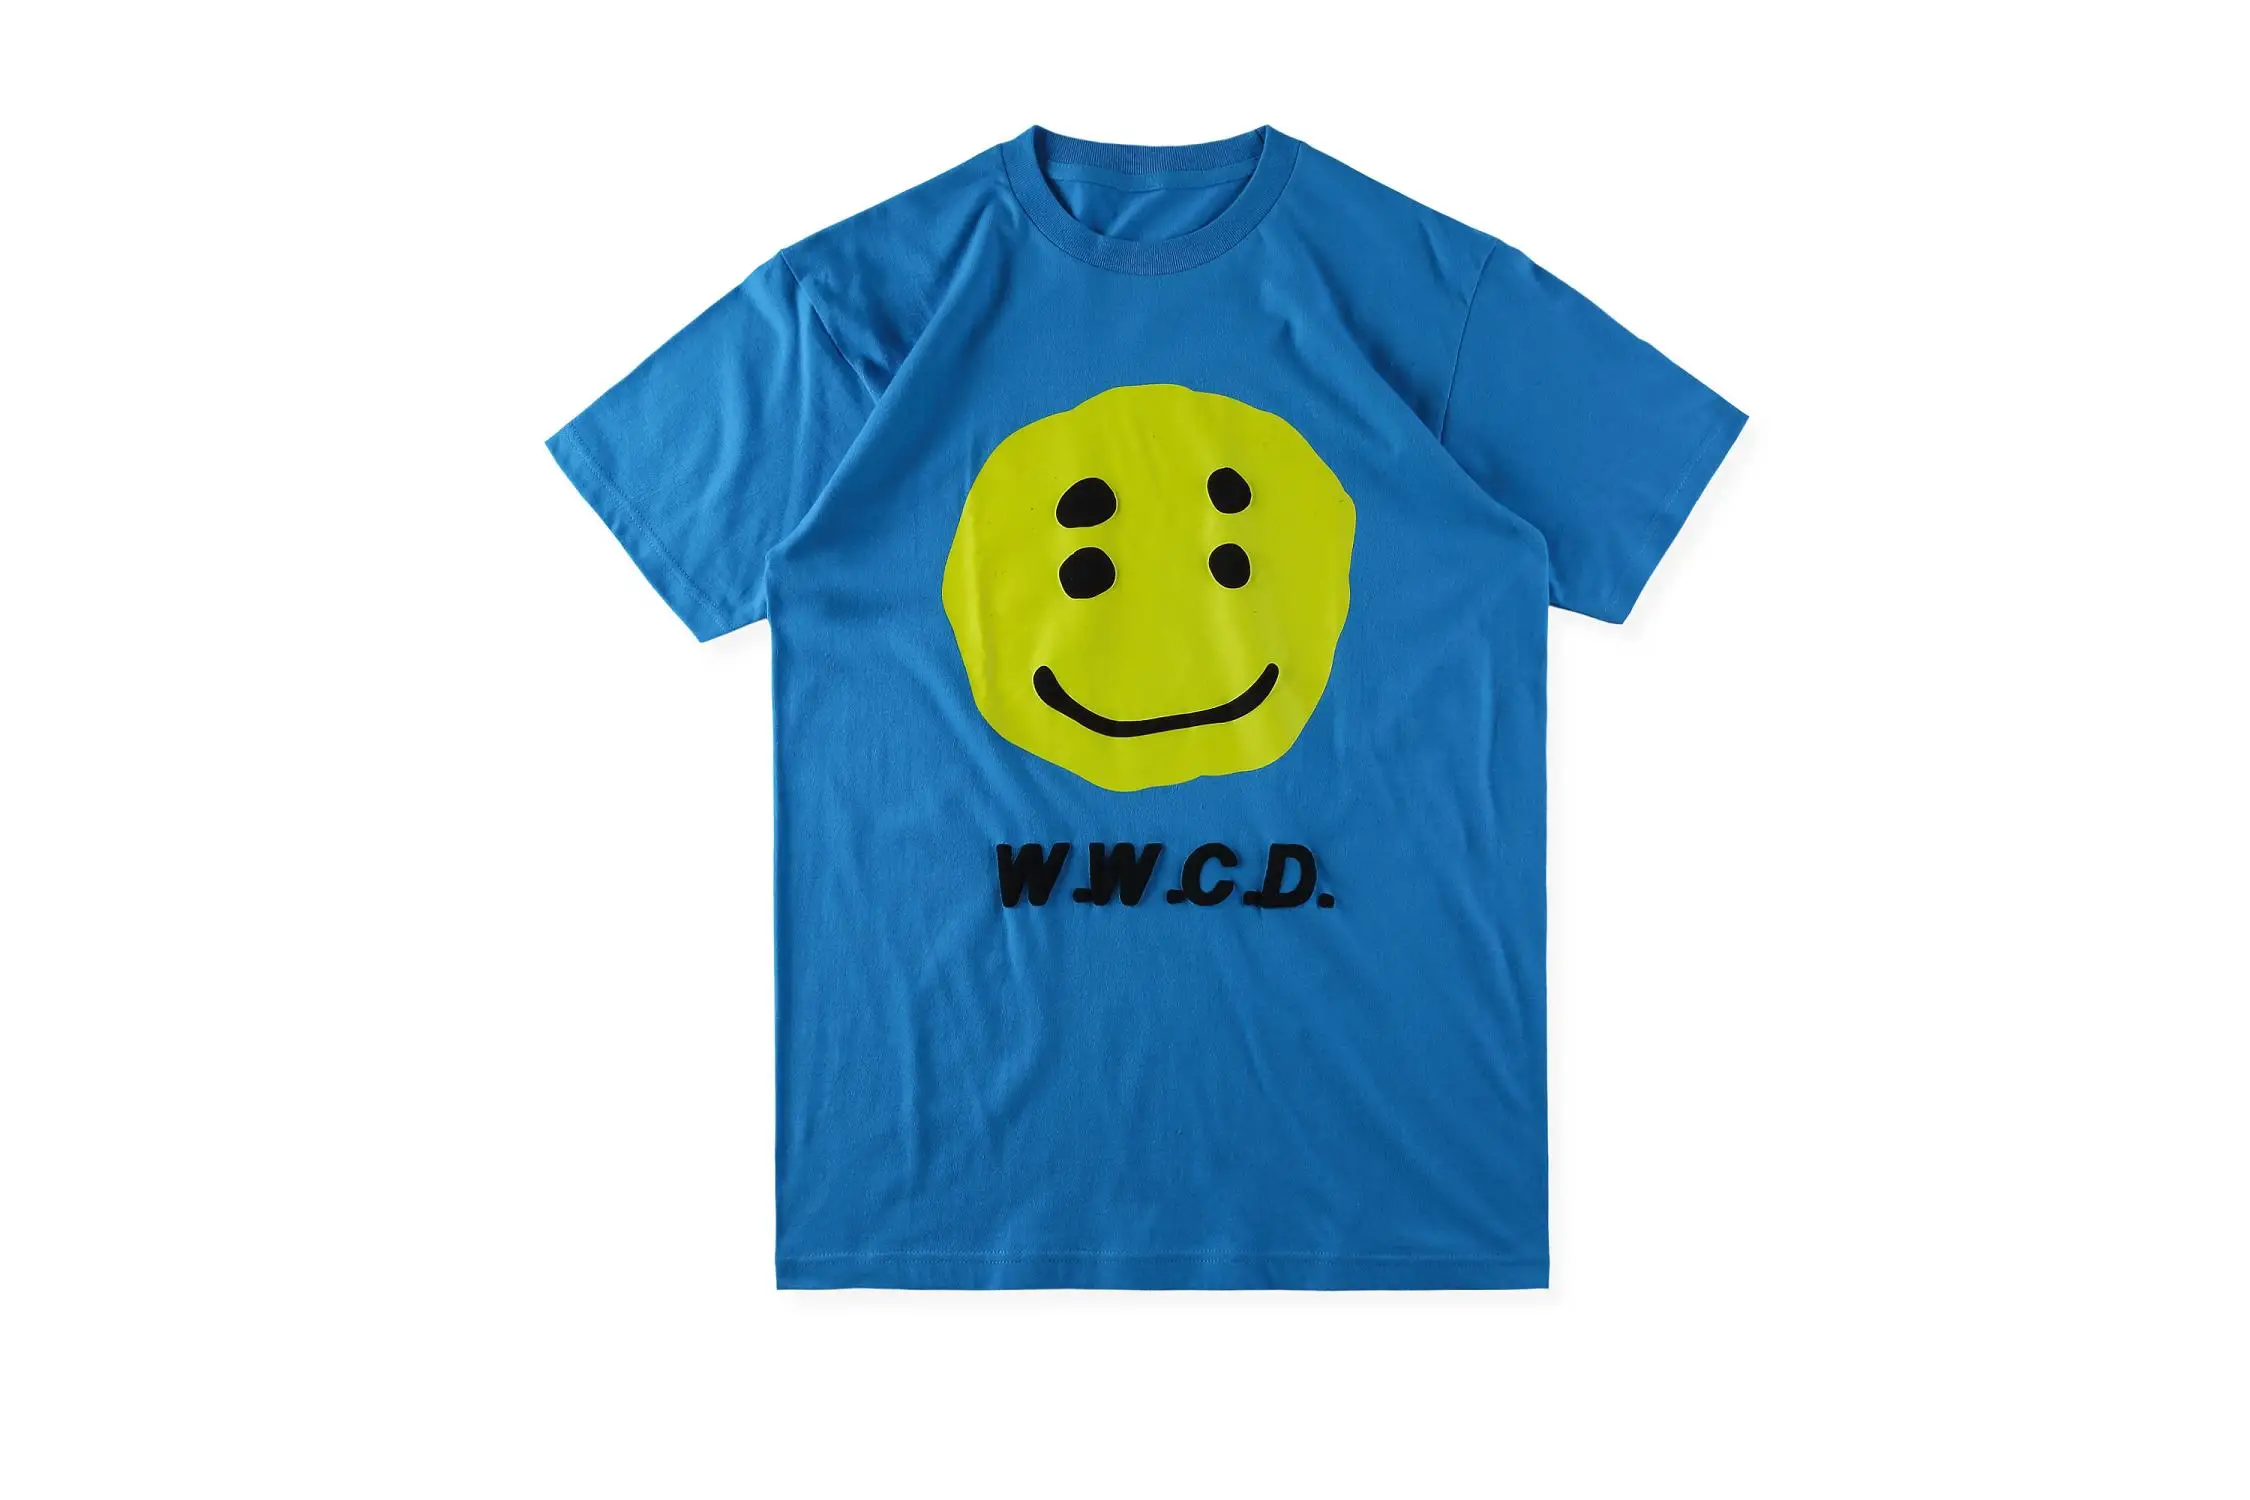 19SS CPFM XYZ Футболка граффити улыбка лицо CPFM. XYZ w. W. C. D я люблю вас Канье Уэст Хип Хоп Уличная футболка CPFM футболки для мужчин и женщин - Цвет: blue3